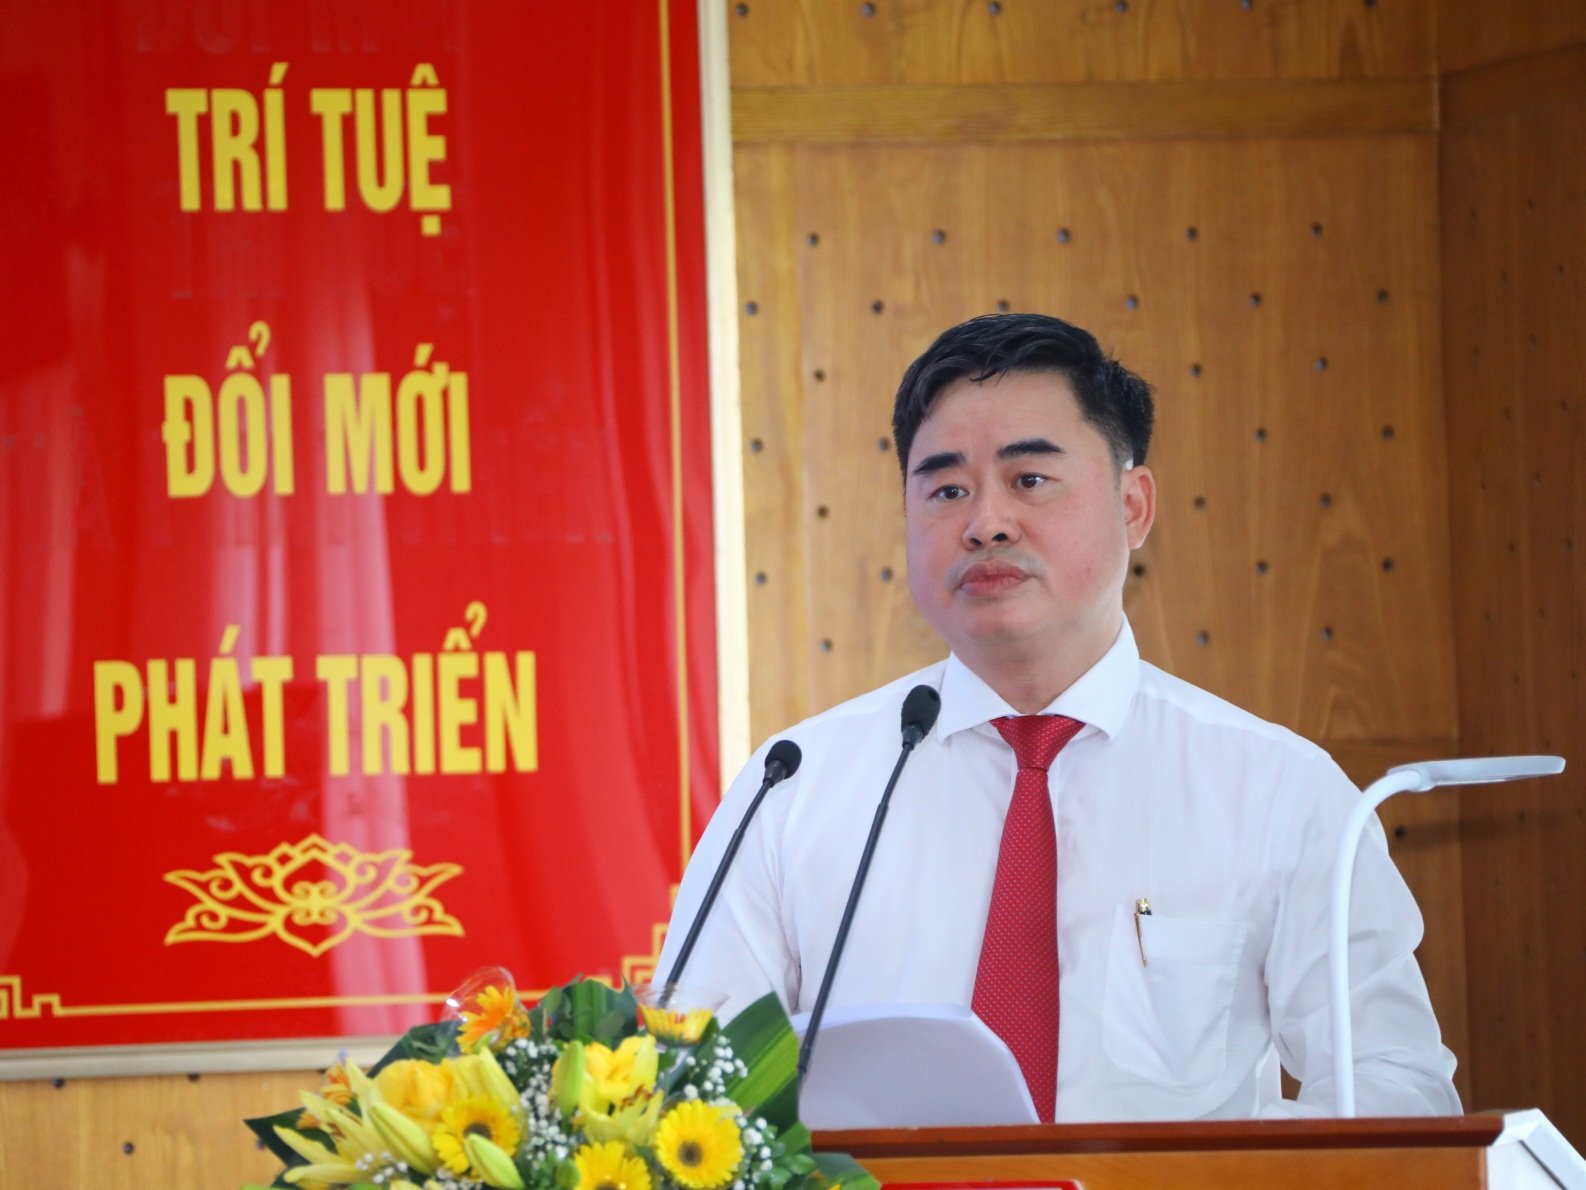 Lễ tổng kết và trao giải Cuộc thi giới thiệu sách về Chủ tịch Hồ Chí Minh với chủ đề “Bác Hồ - niềm tin yêu qua từng trang sách” năm 2022